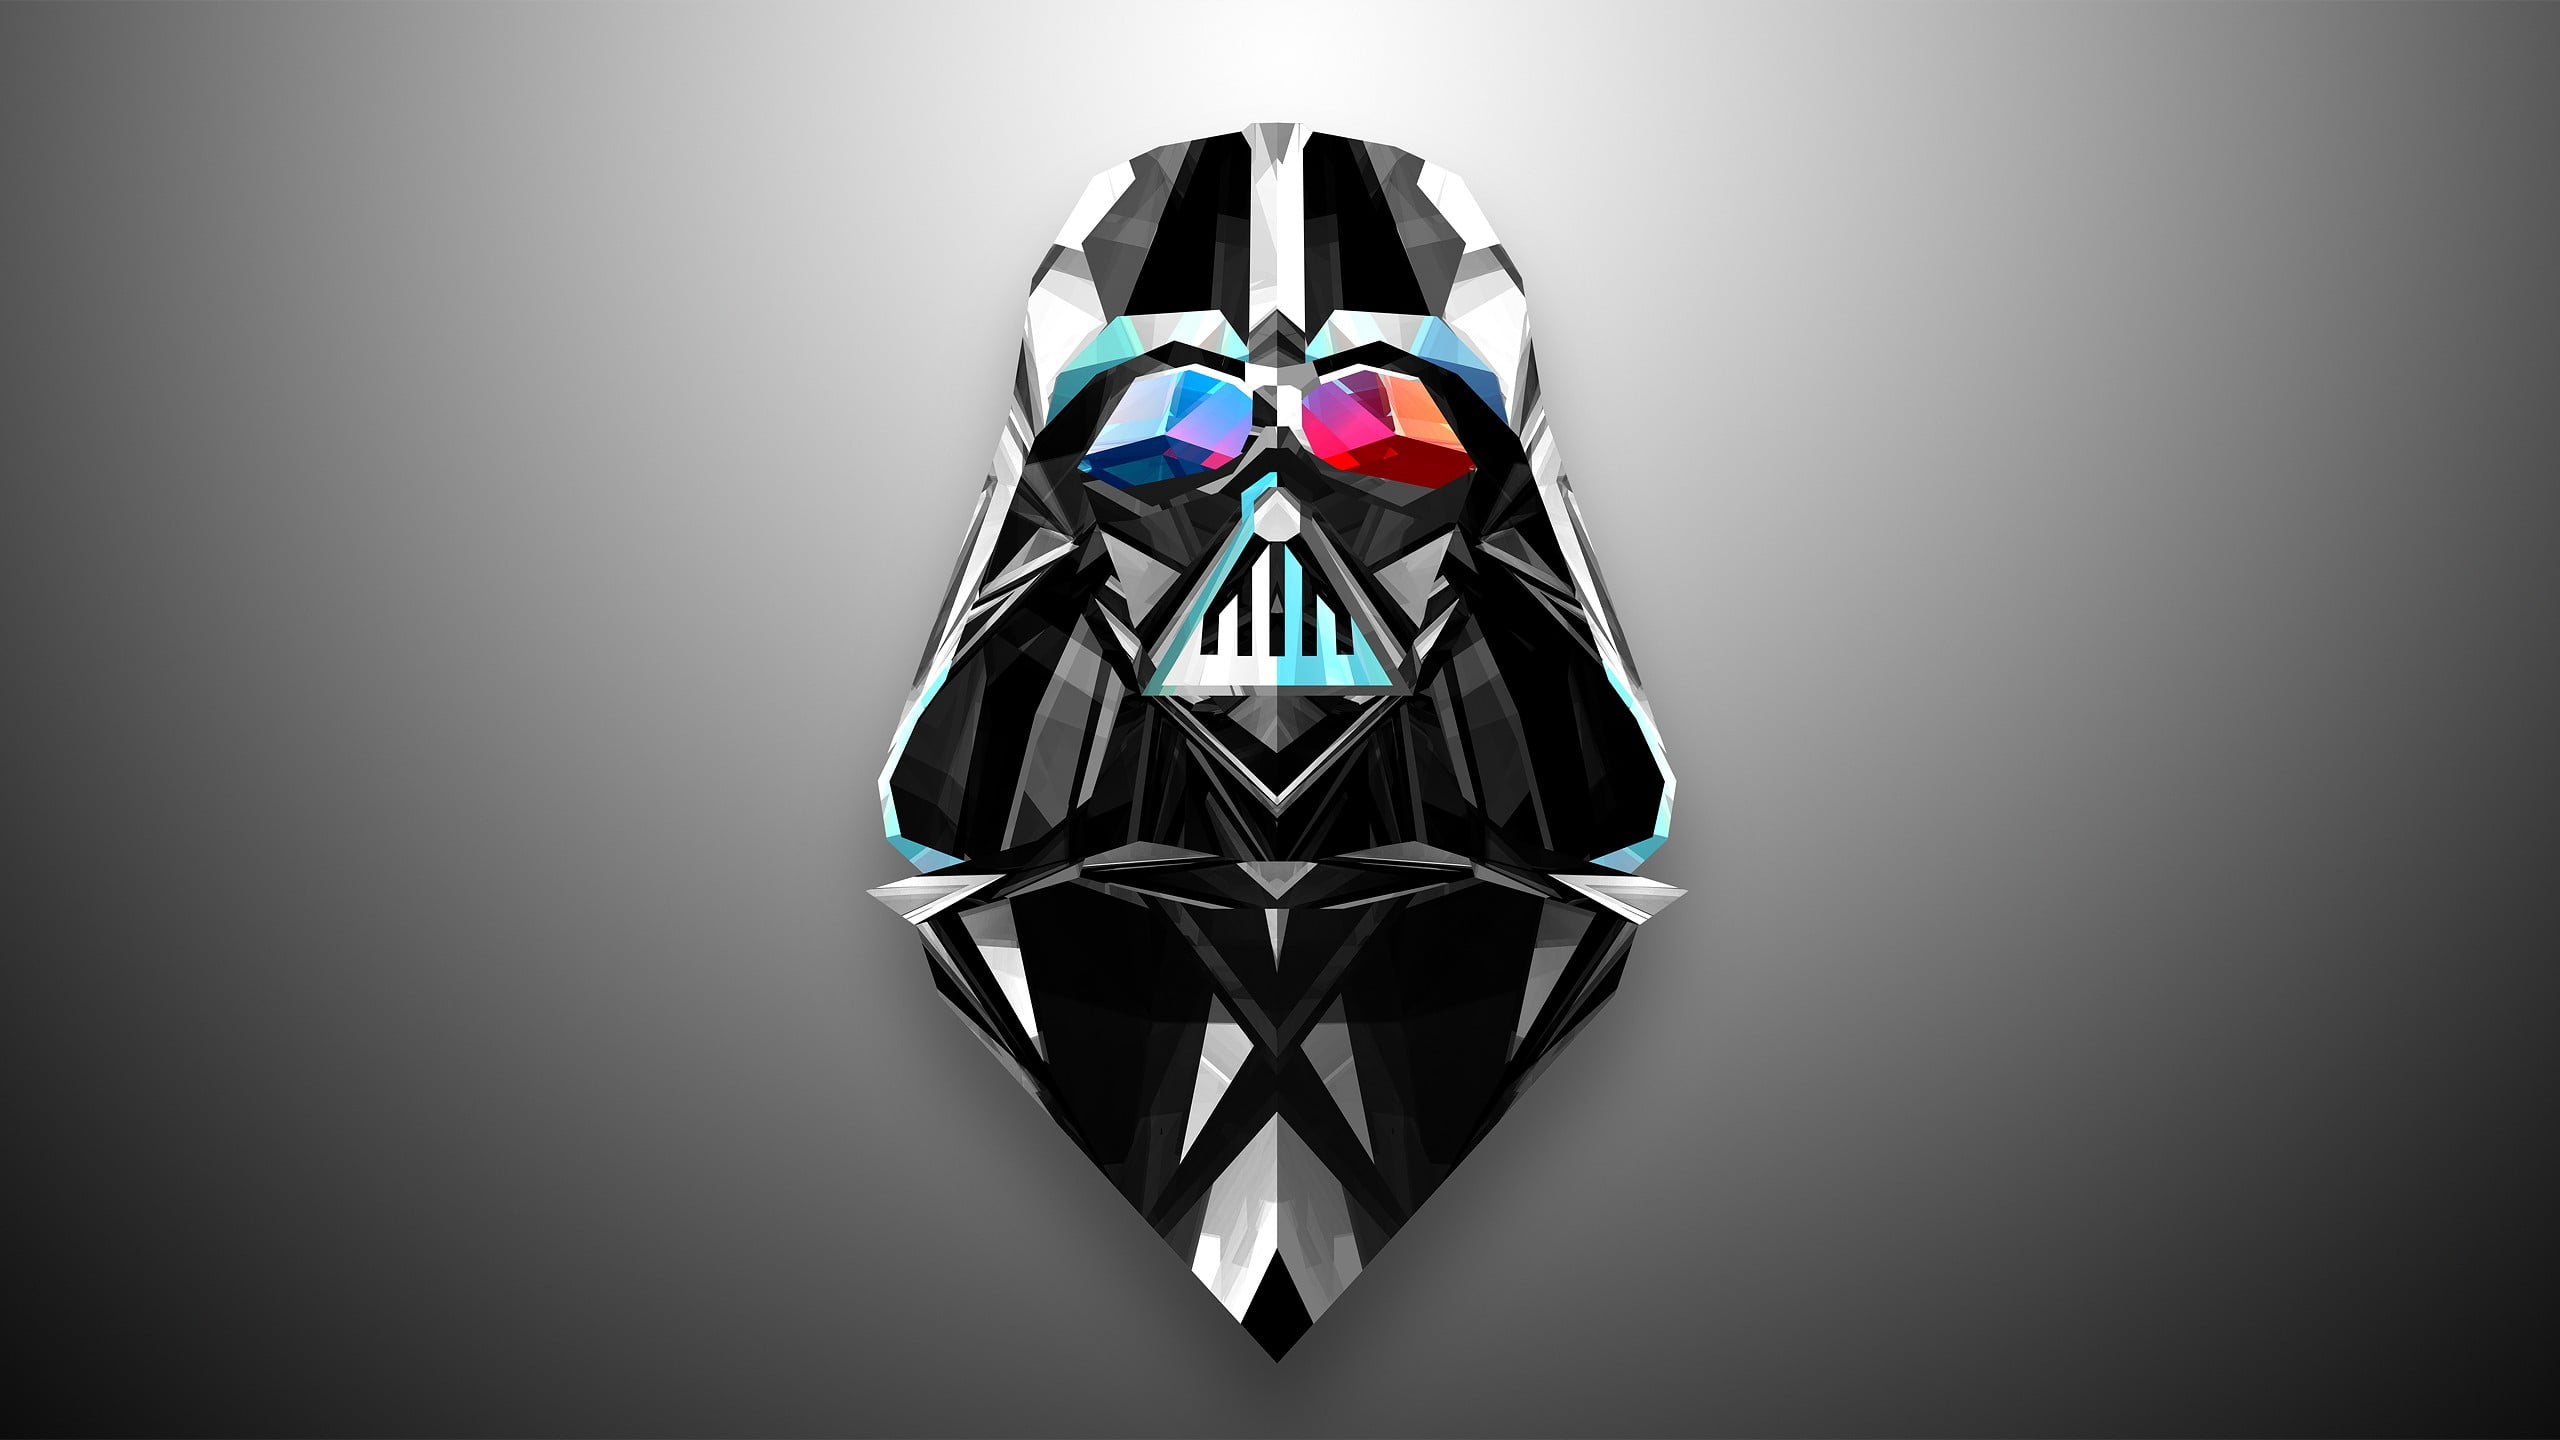 Darth Vader logo, Darth Vader illustration, Star Wars, artwork